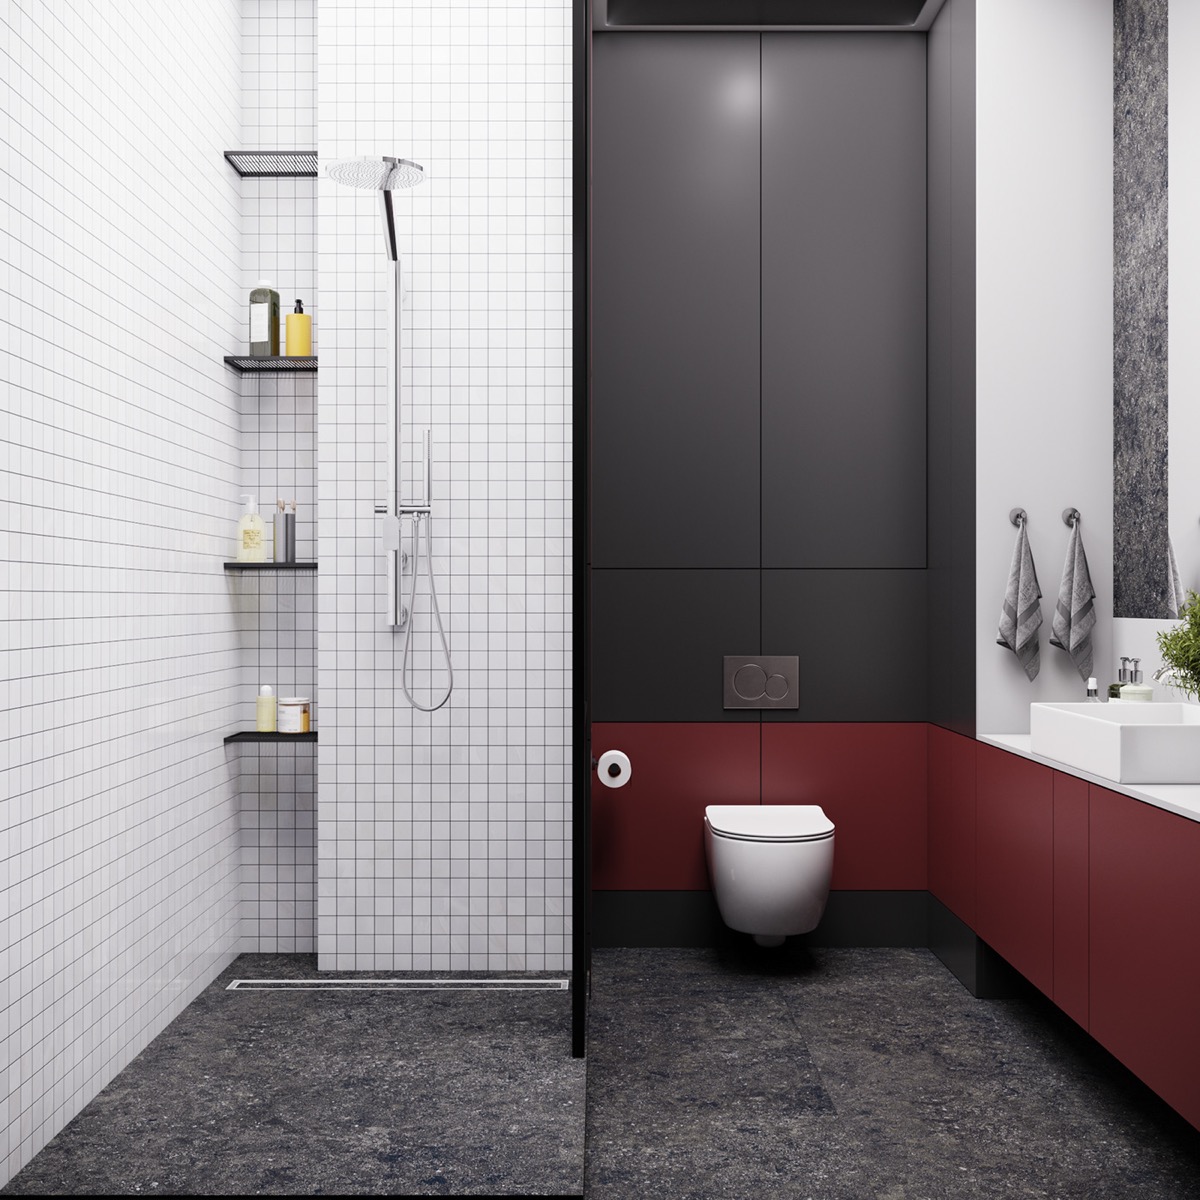 bathroom-tiles-600x600.jpg